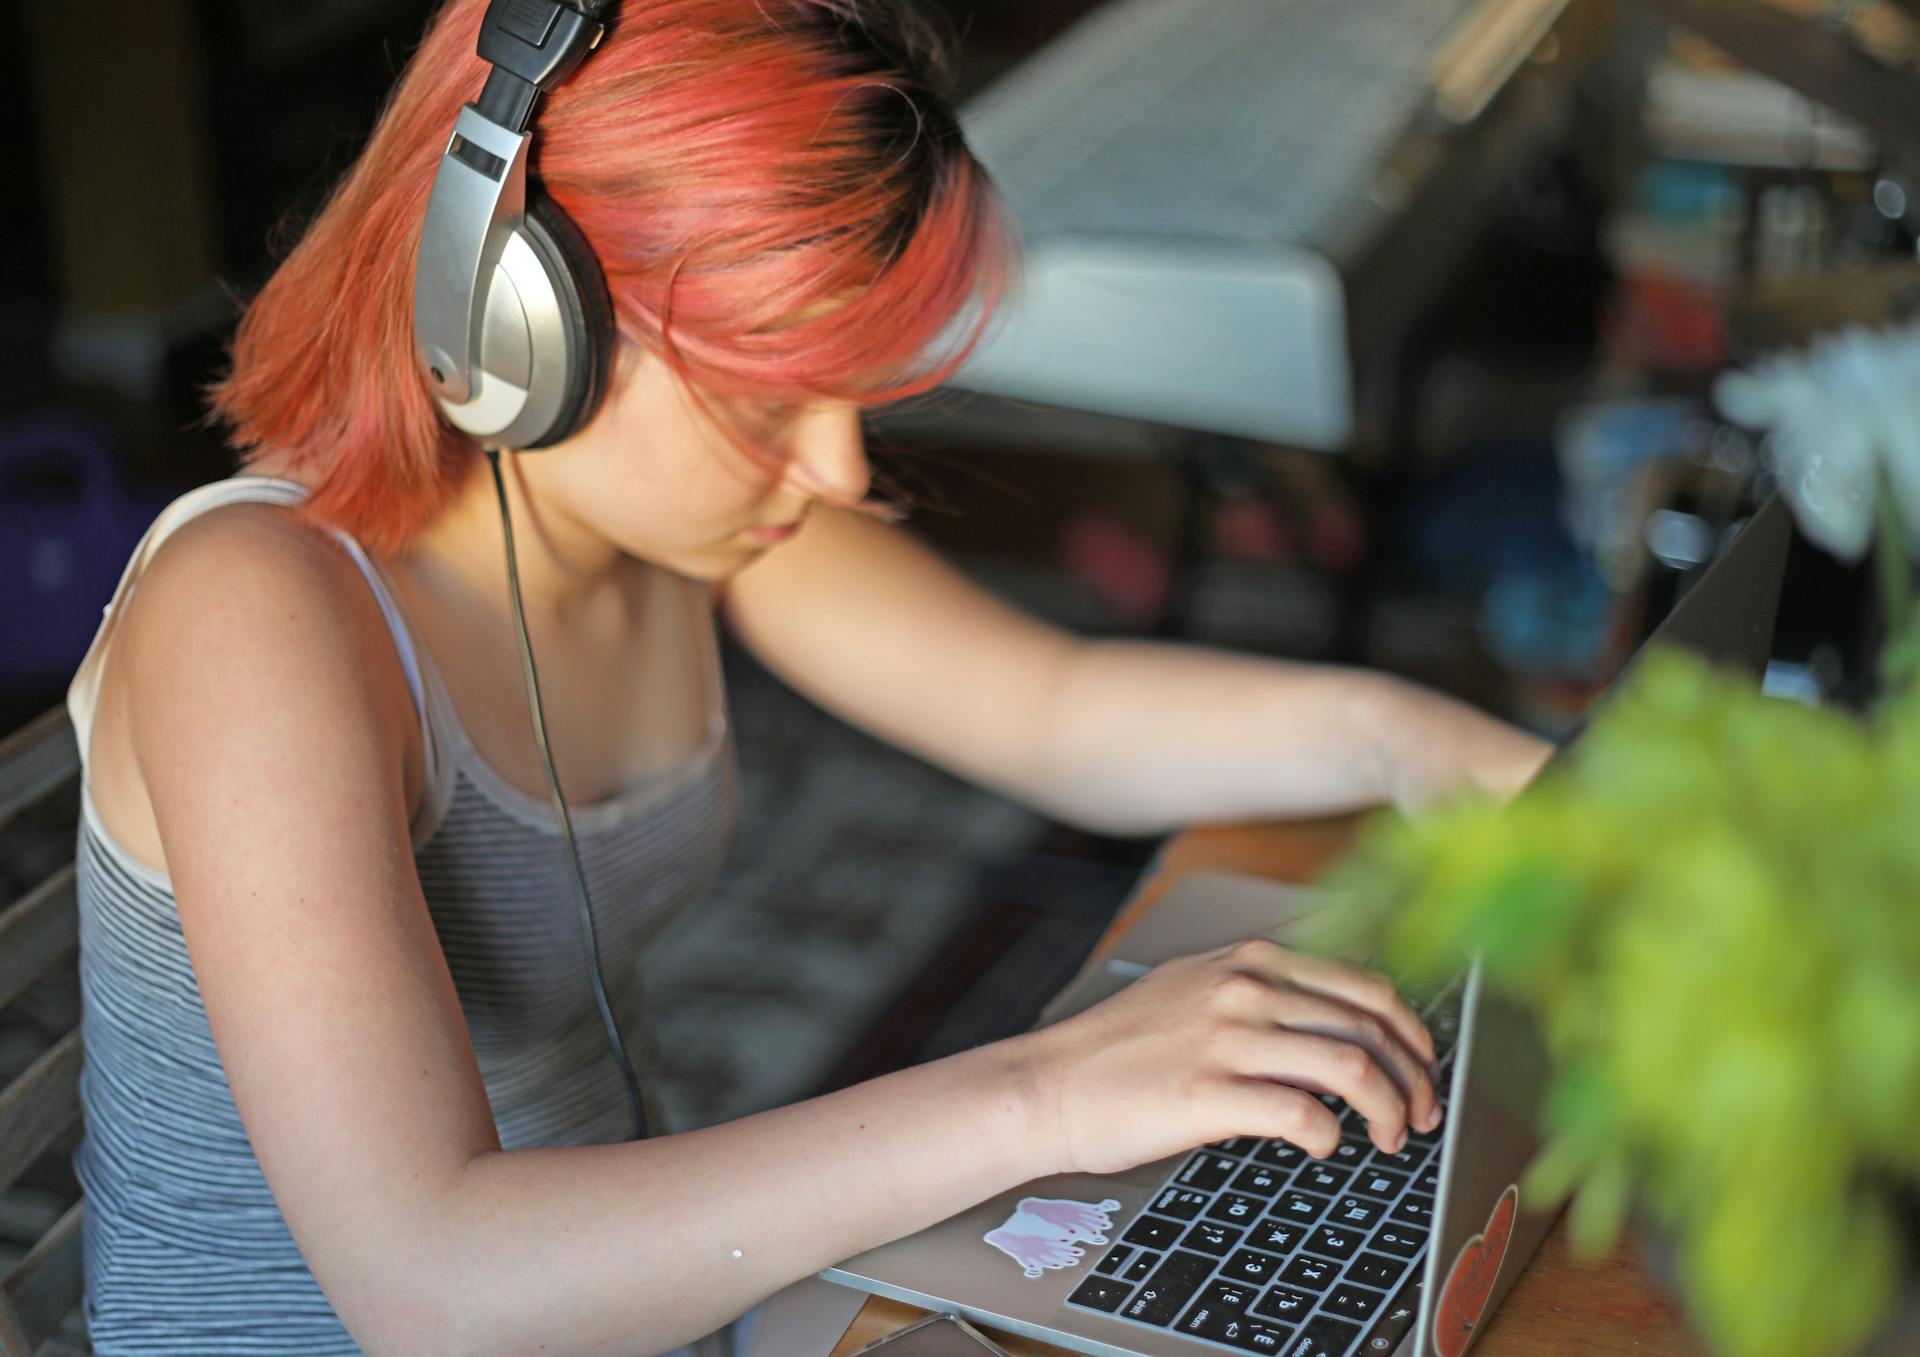 Ung pige sidder og kigger opslugt på sin computer mens hun har høretelefoner på.